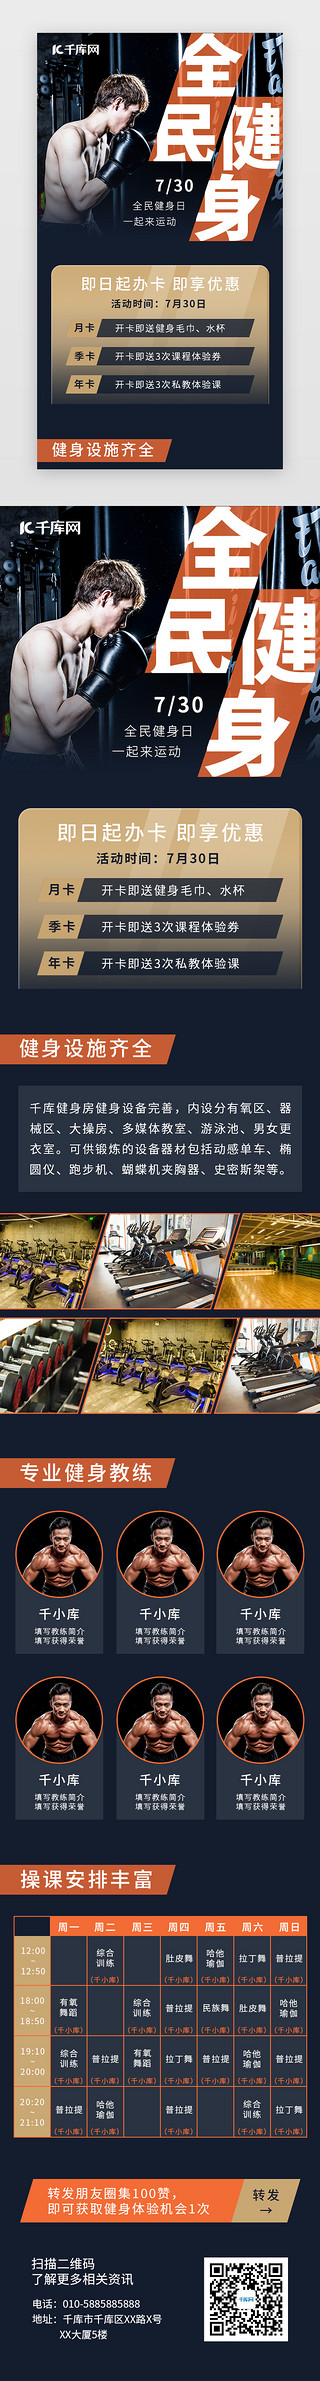 全民健身日健身房活动H5长图